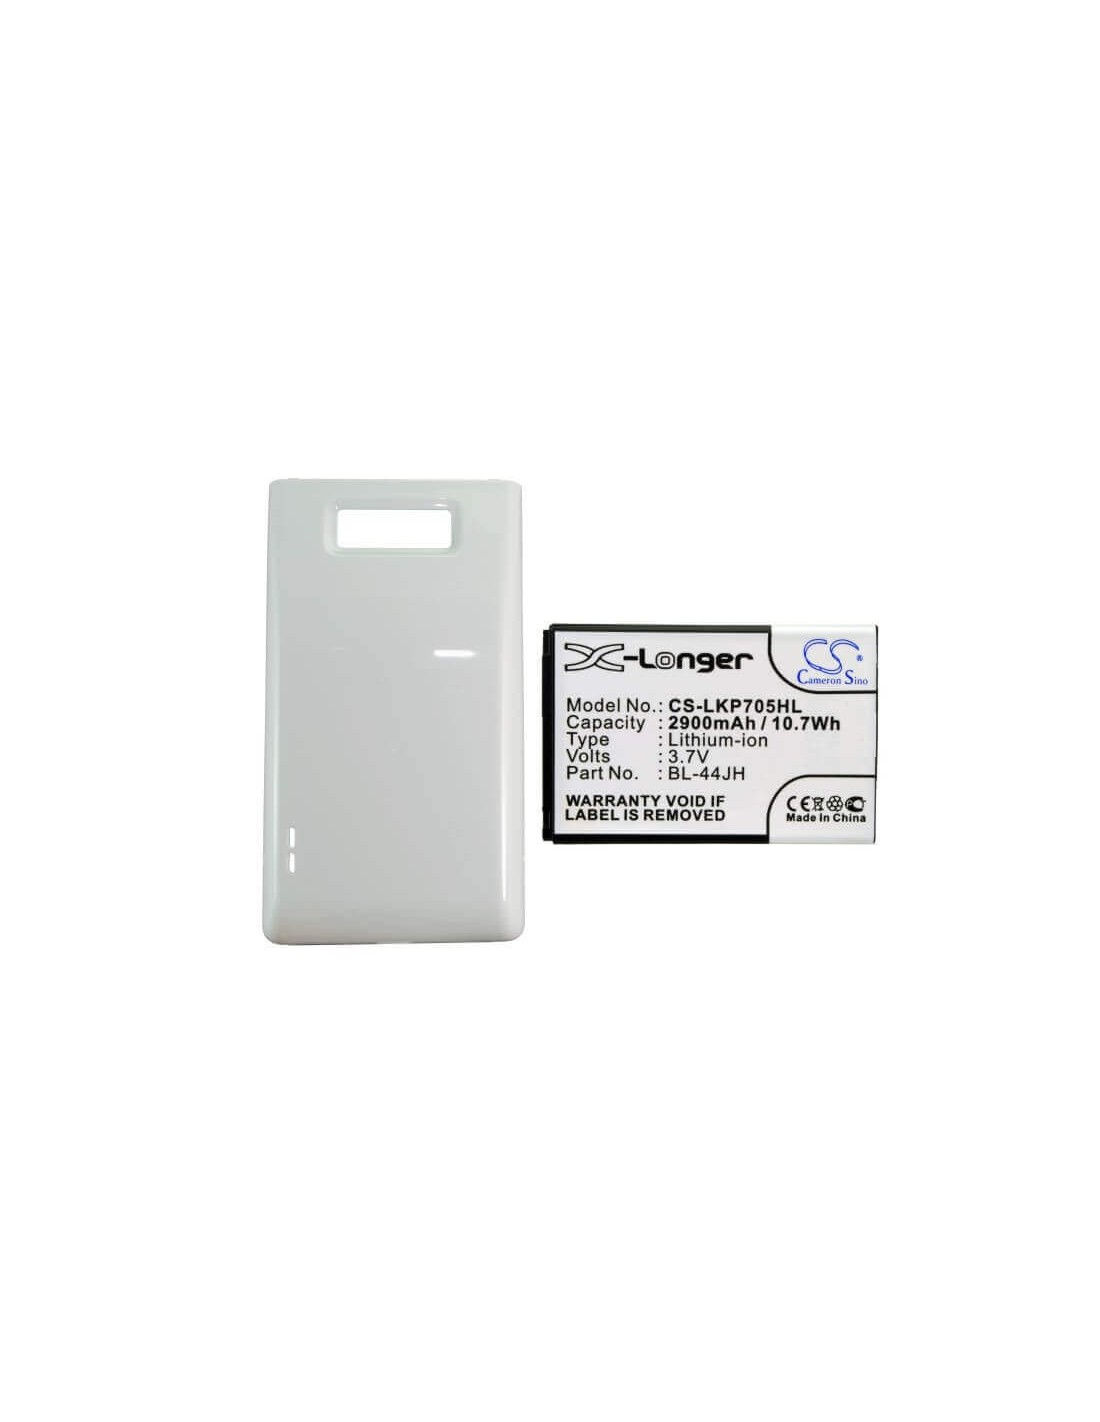 Battery for LG Optimus P705, Optimus P705g, white cover 3.7V, 2900mAh - 10.73Wh